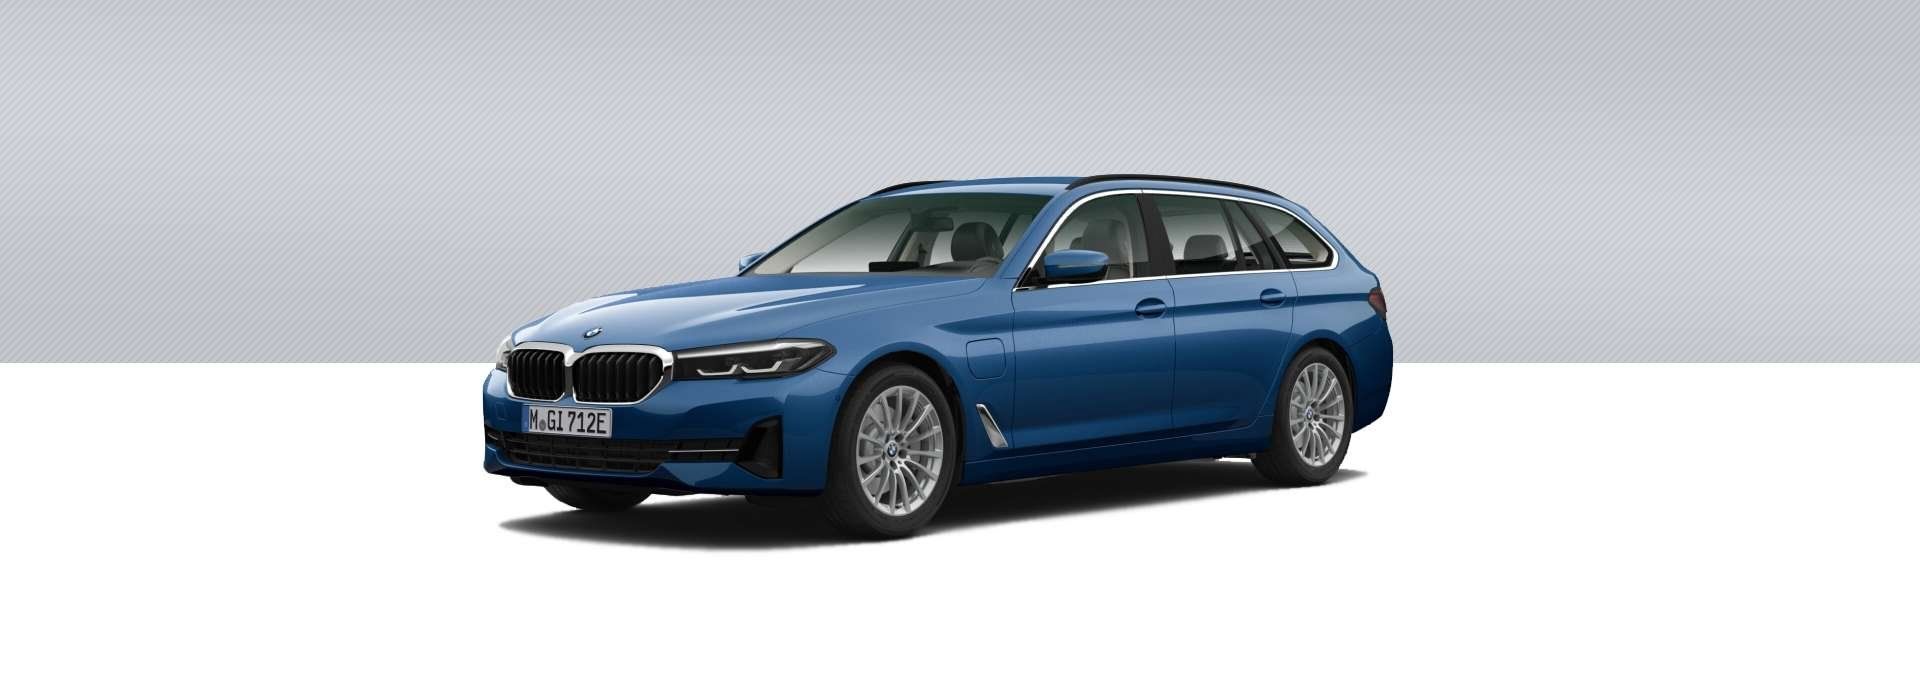 empresas instaladoras punto de recarga BMW serie 5 touring híbrido enchufable